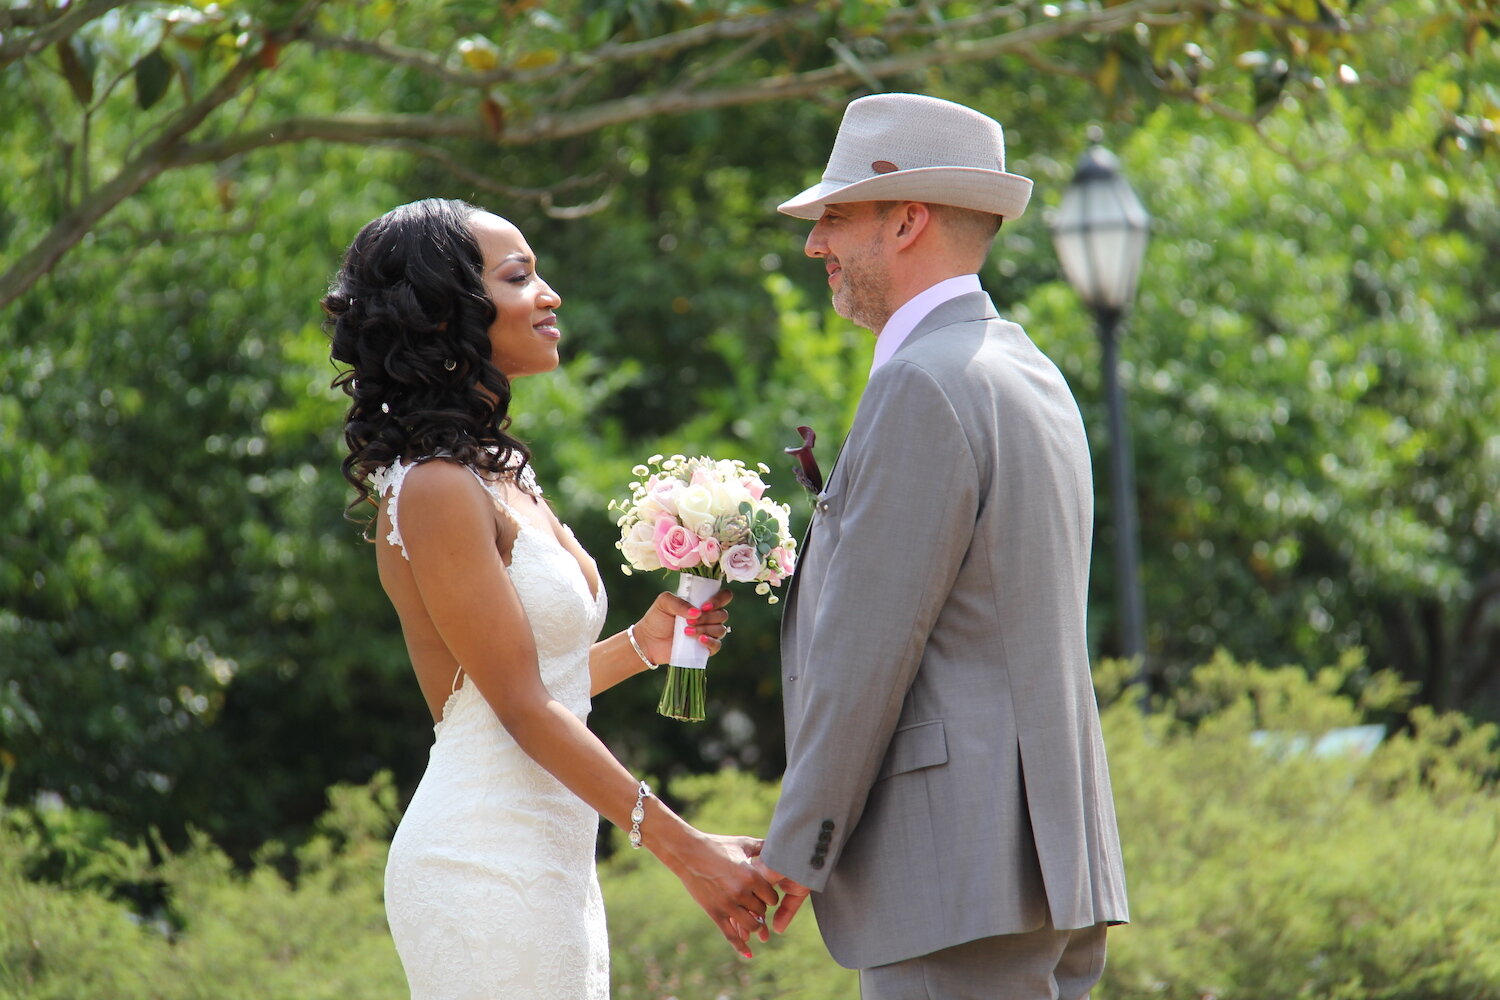 bride and groom at outdoor elopement wedding